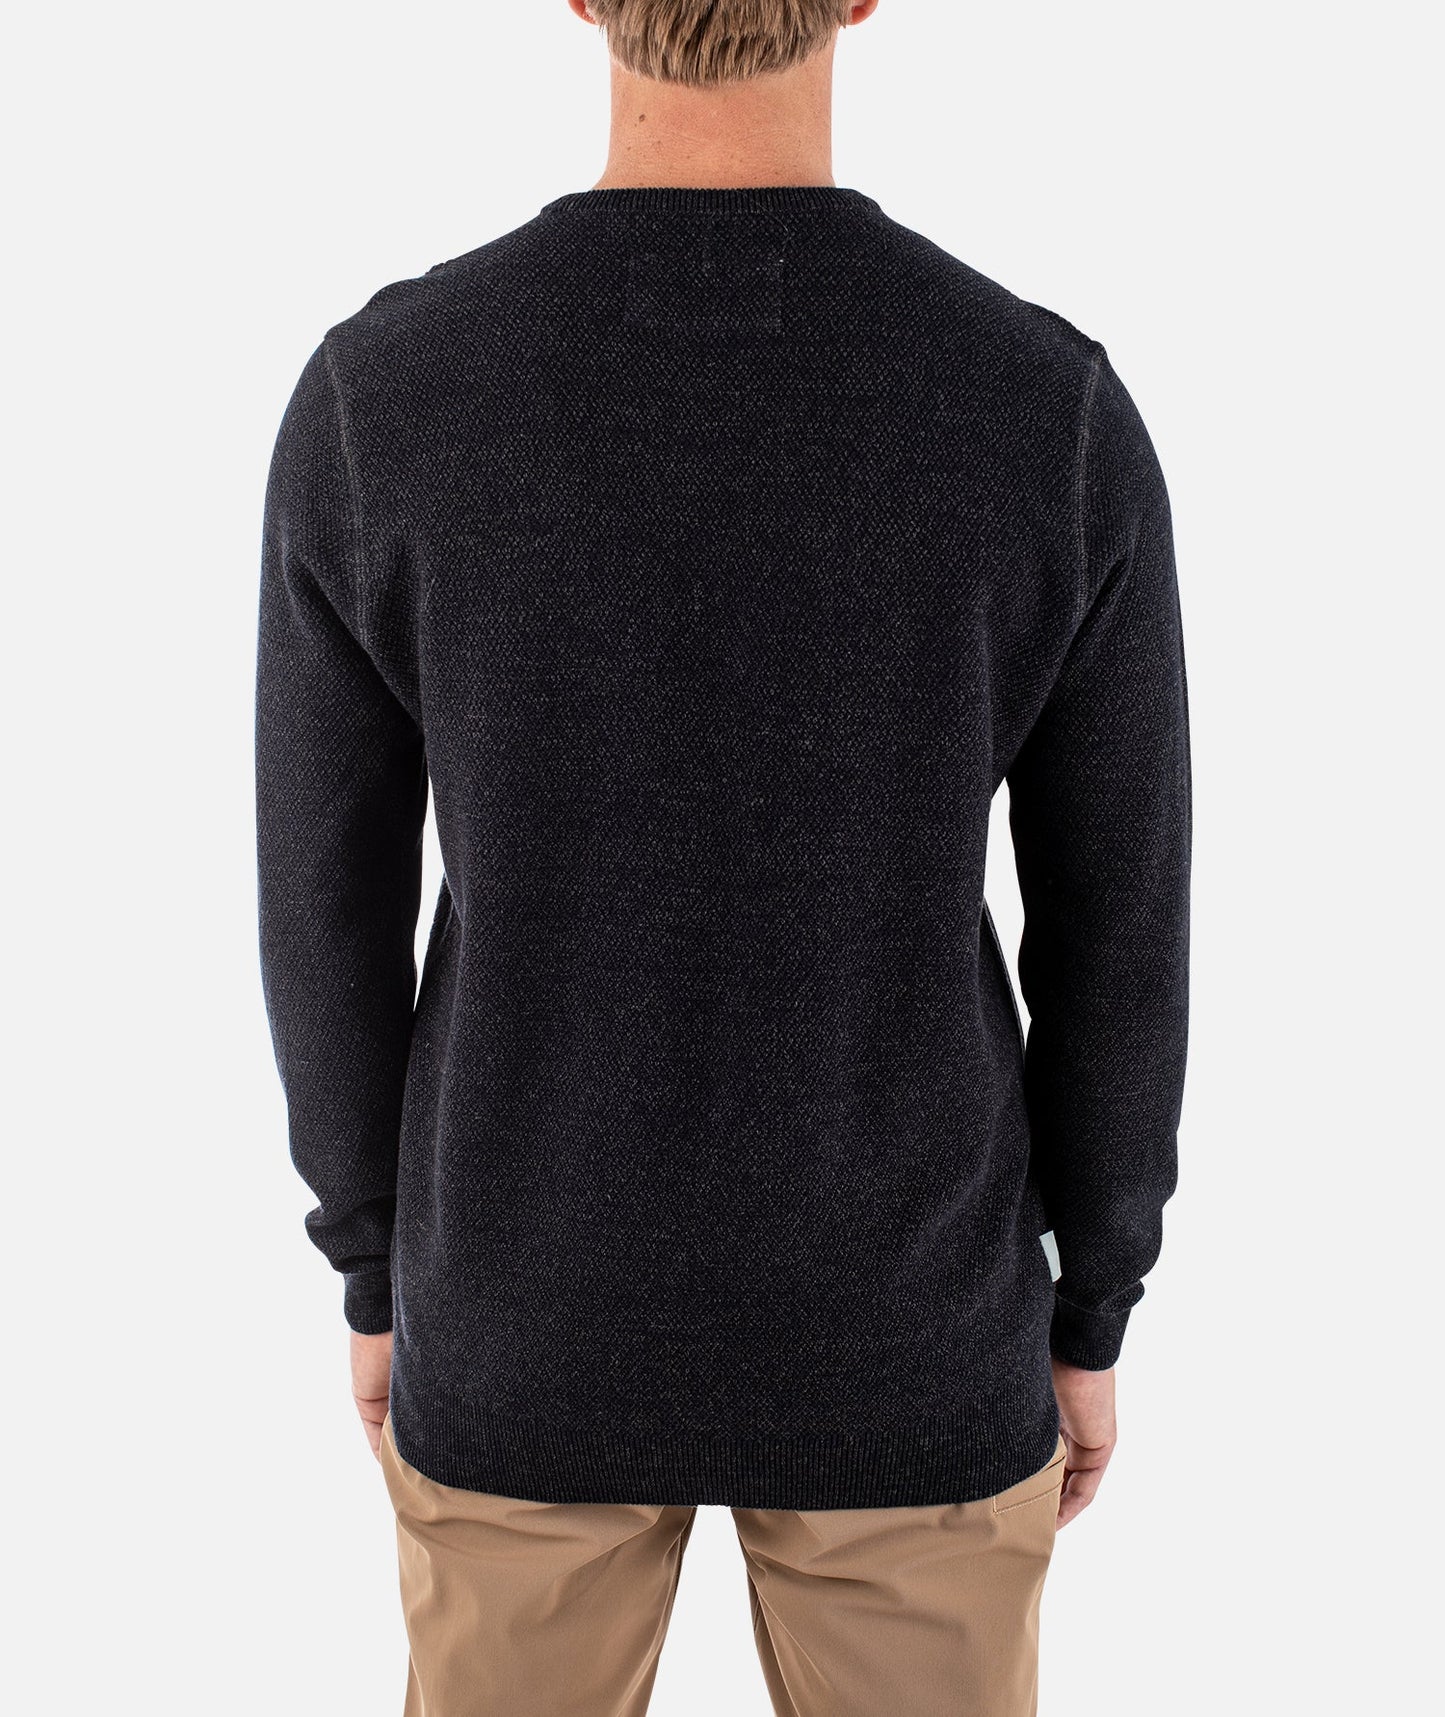 Brine Sweater - Carbon